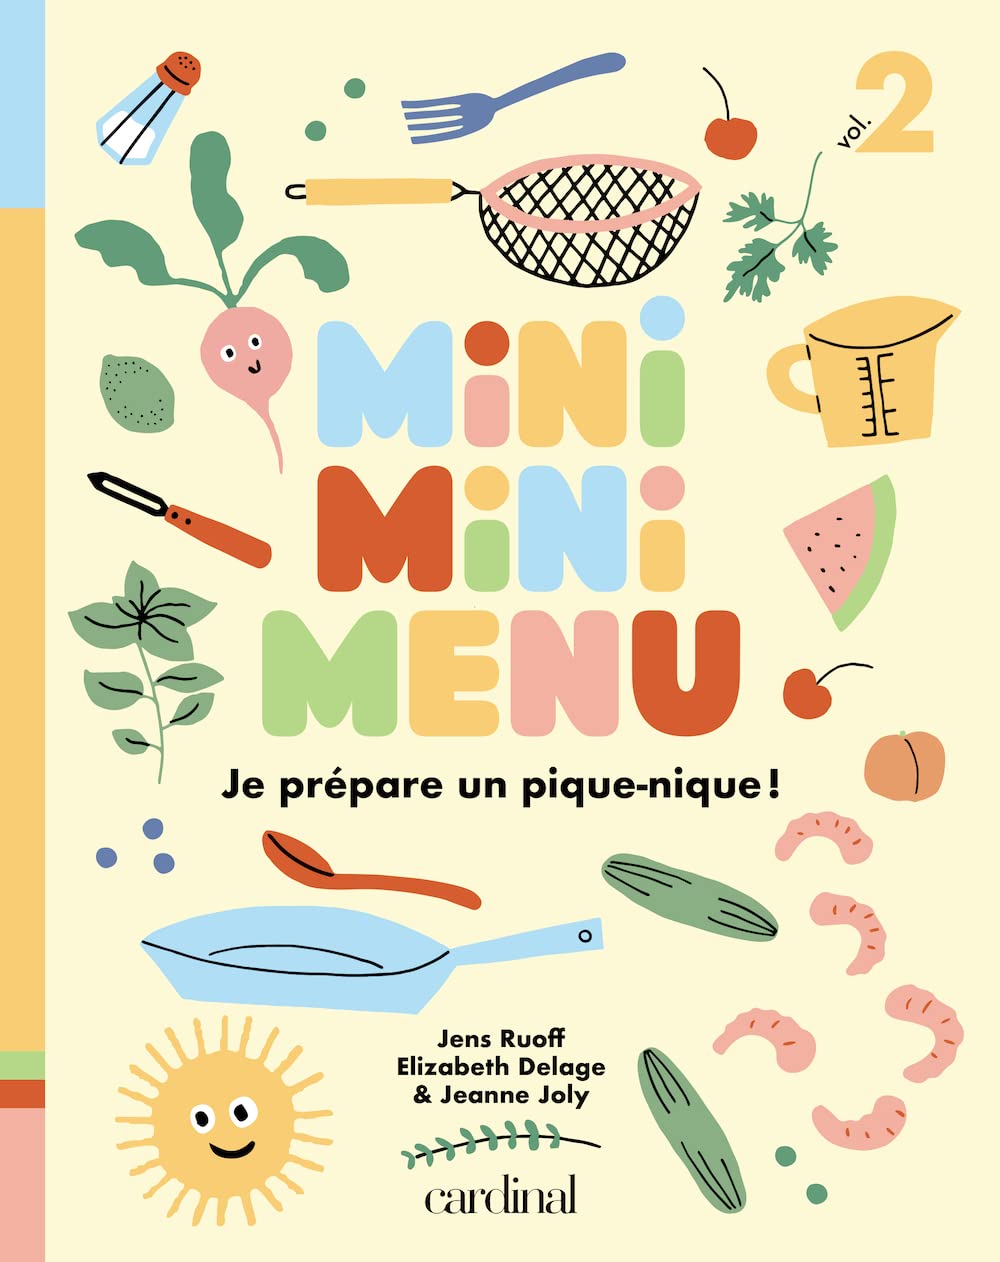 Je prépare un pique-nique! Mini mini menu